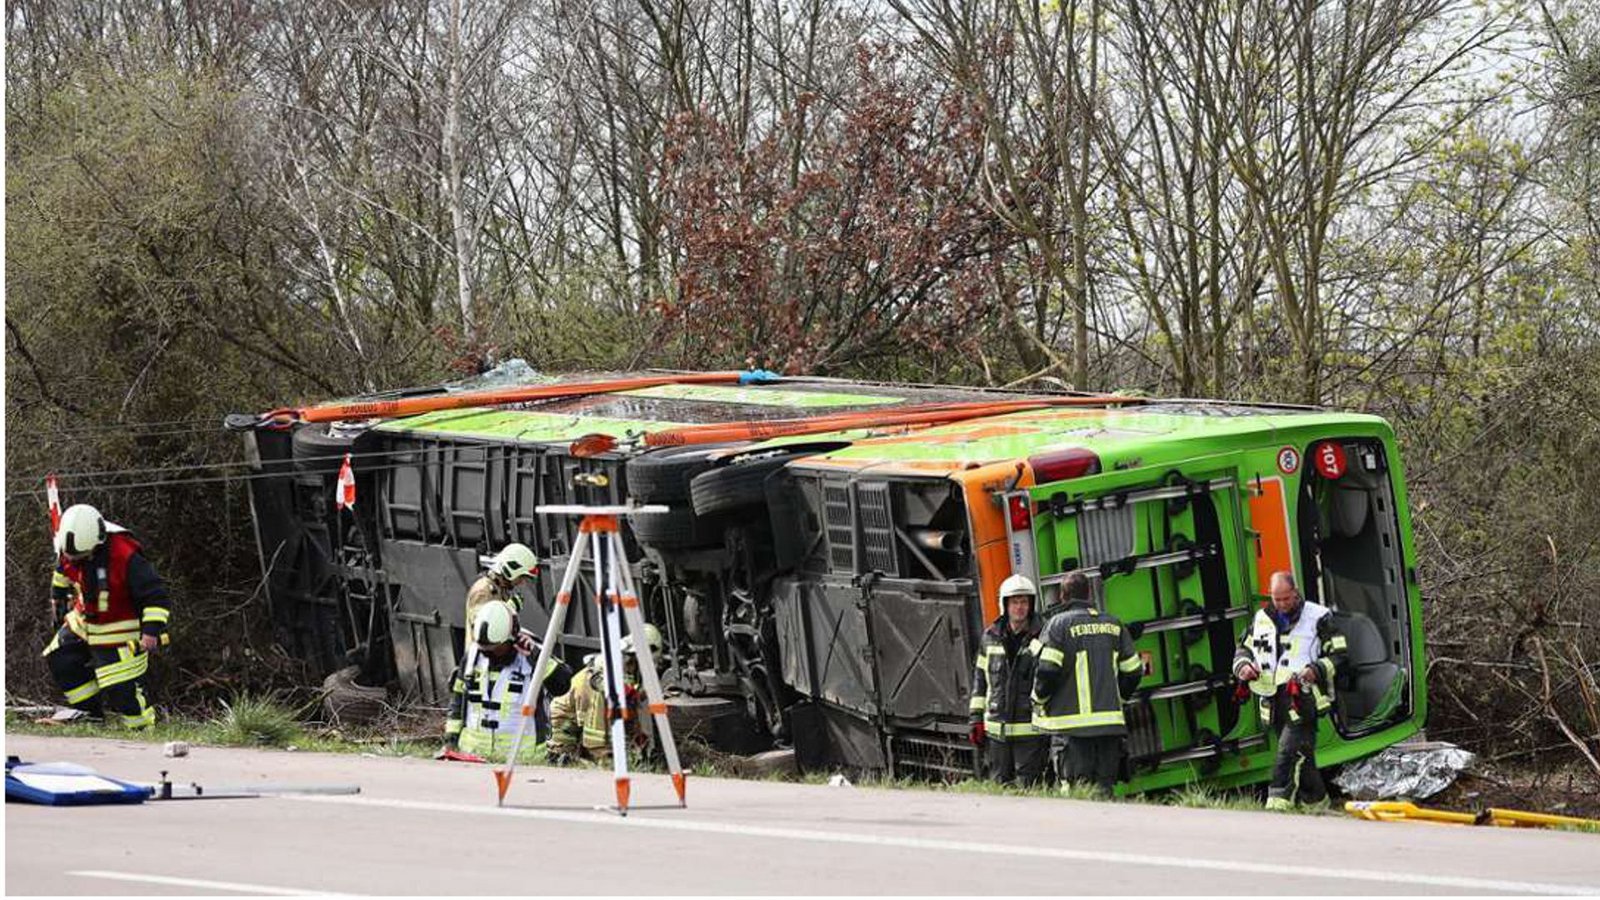 Der Bus kam aus bislang unbekannter Ursache von der Fahrbahn ab und stürzte auf die Seite.Foto: dpa/Jan Woitas